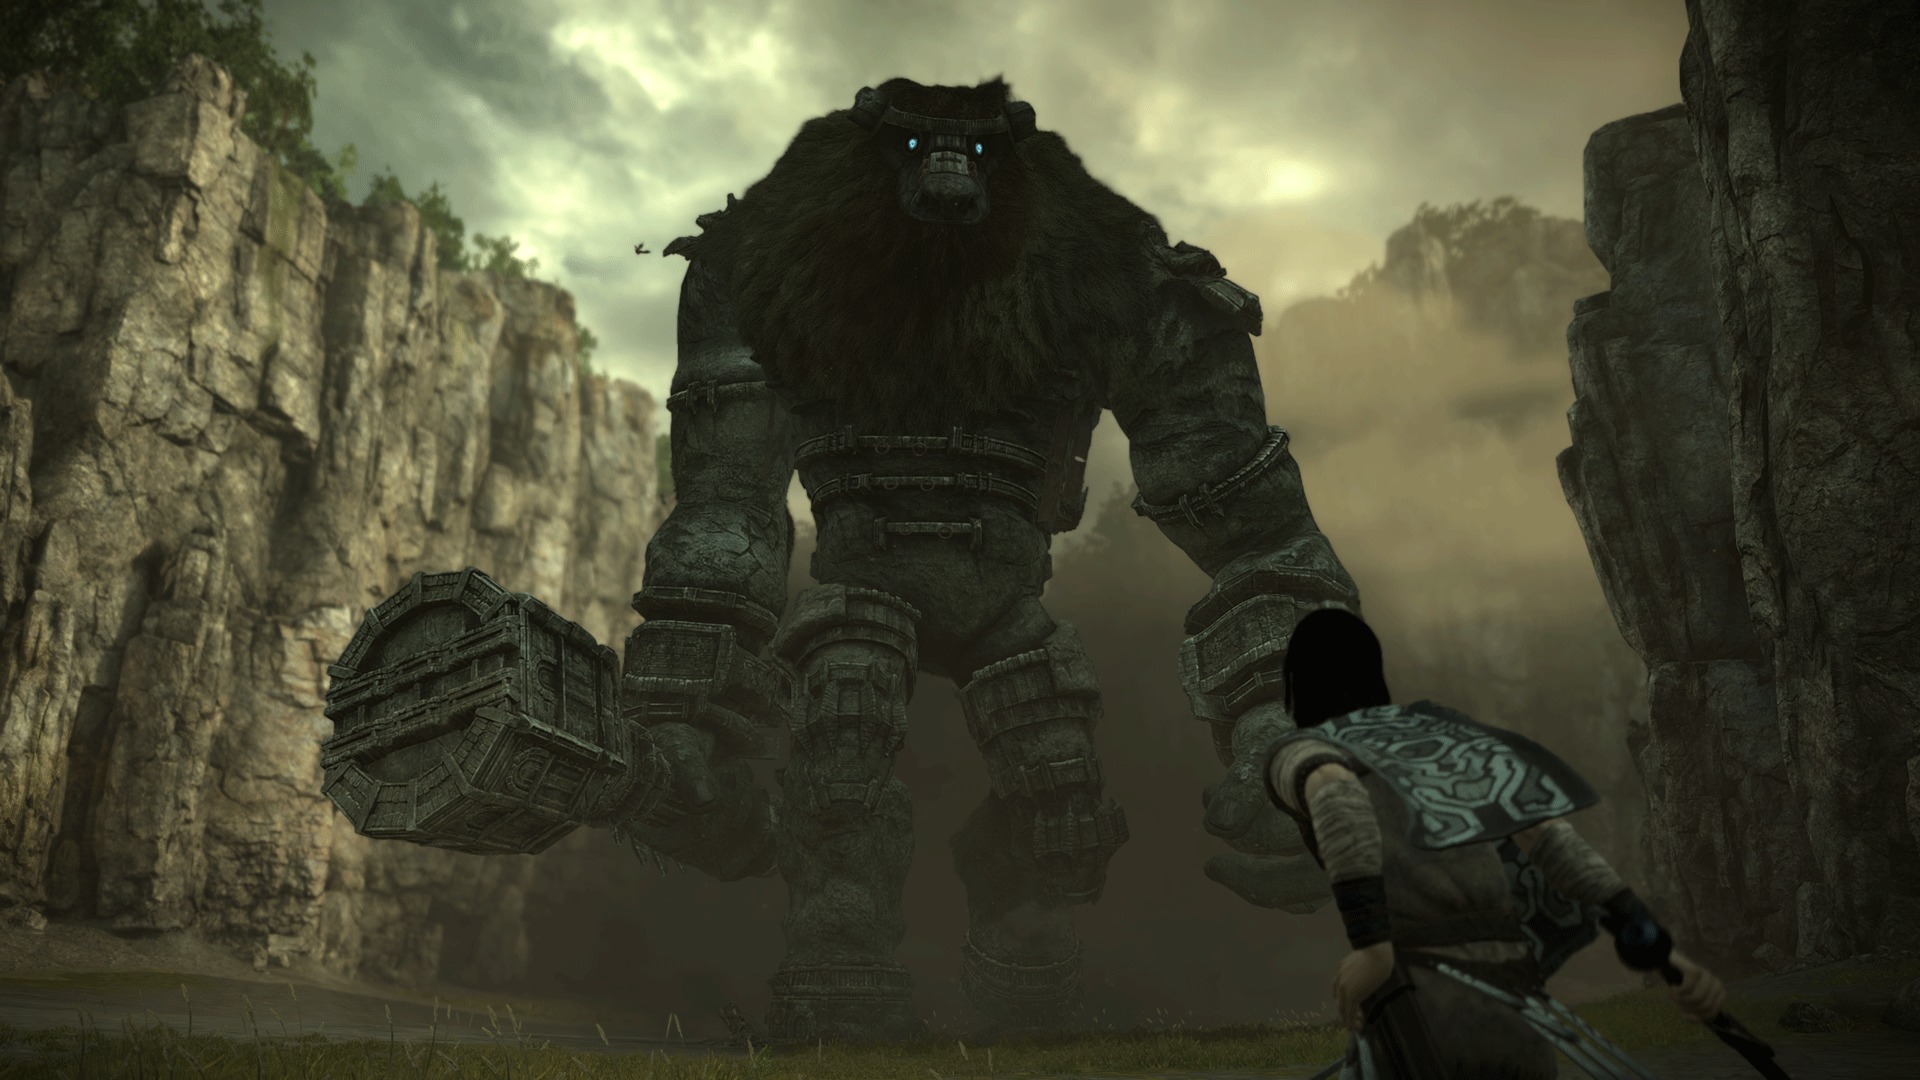 ワンダと巨像 が2018年 Playstation 4用ソフトになって帰ってくる